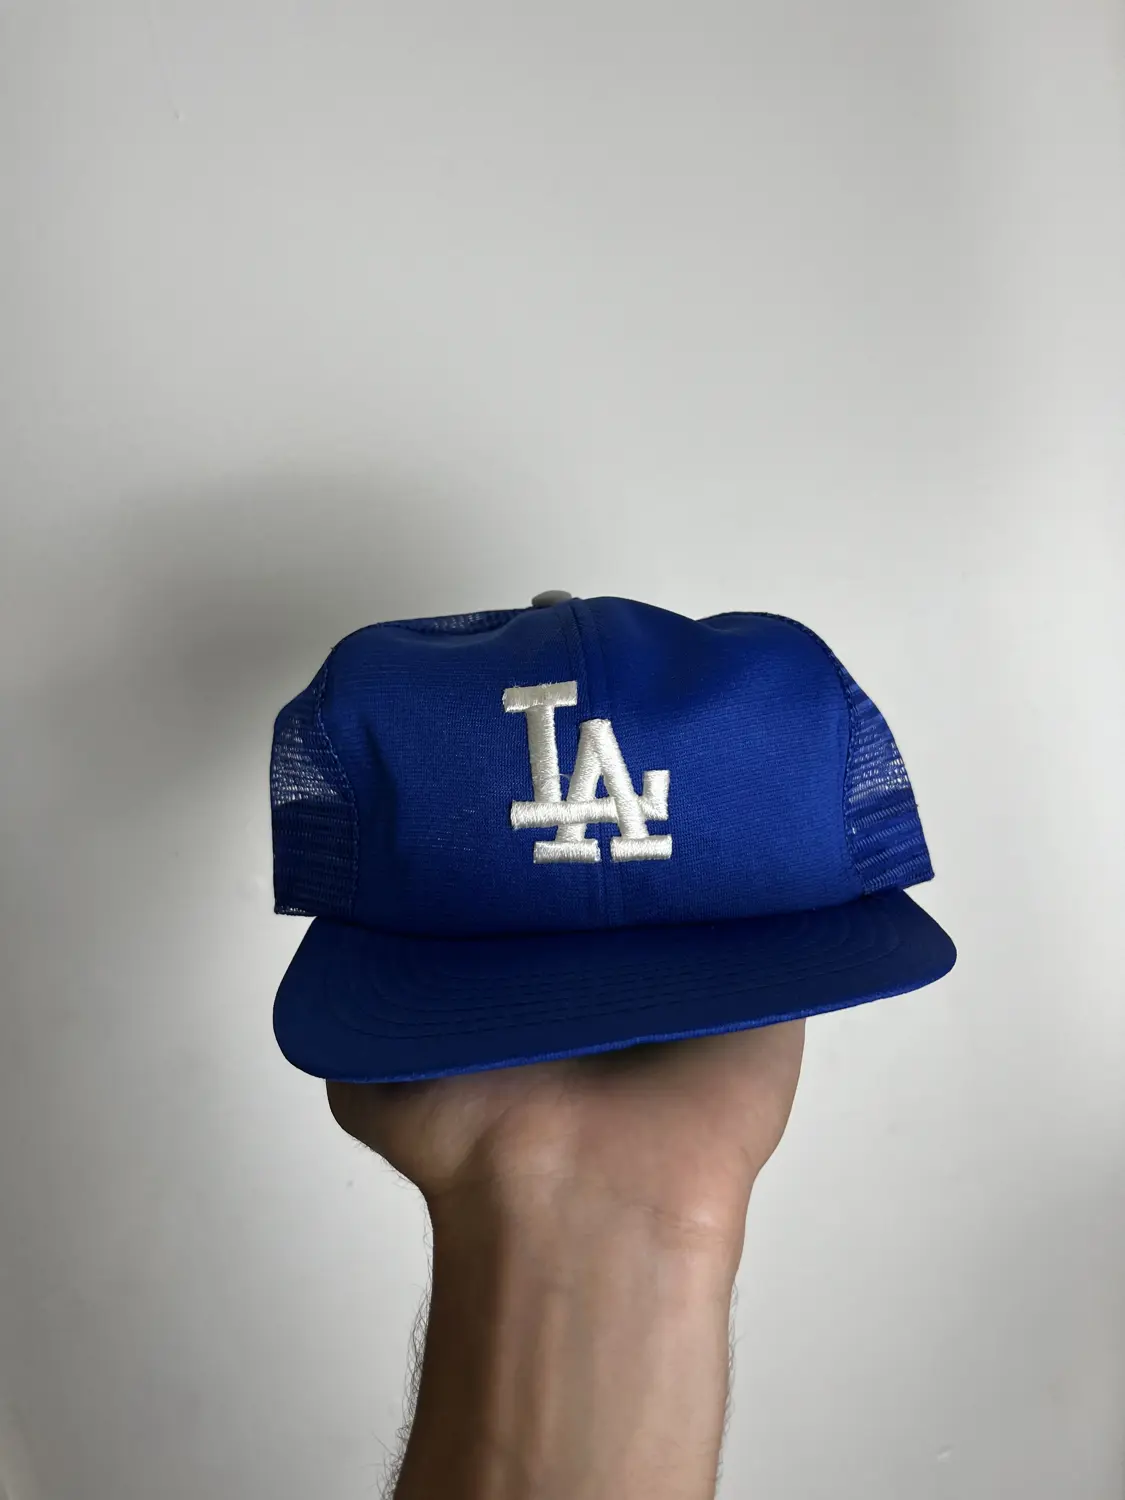 Vintage LA dodgers hat